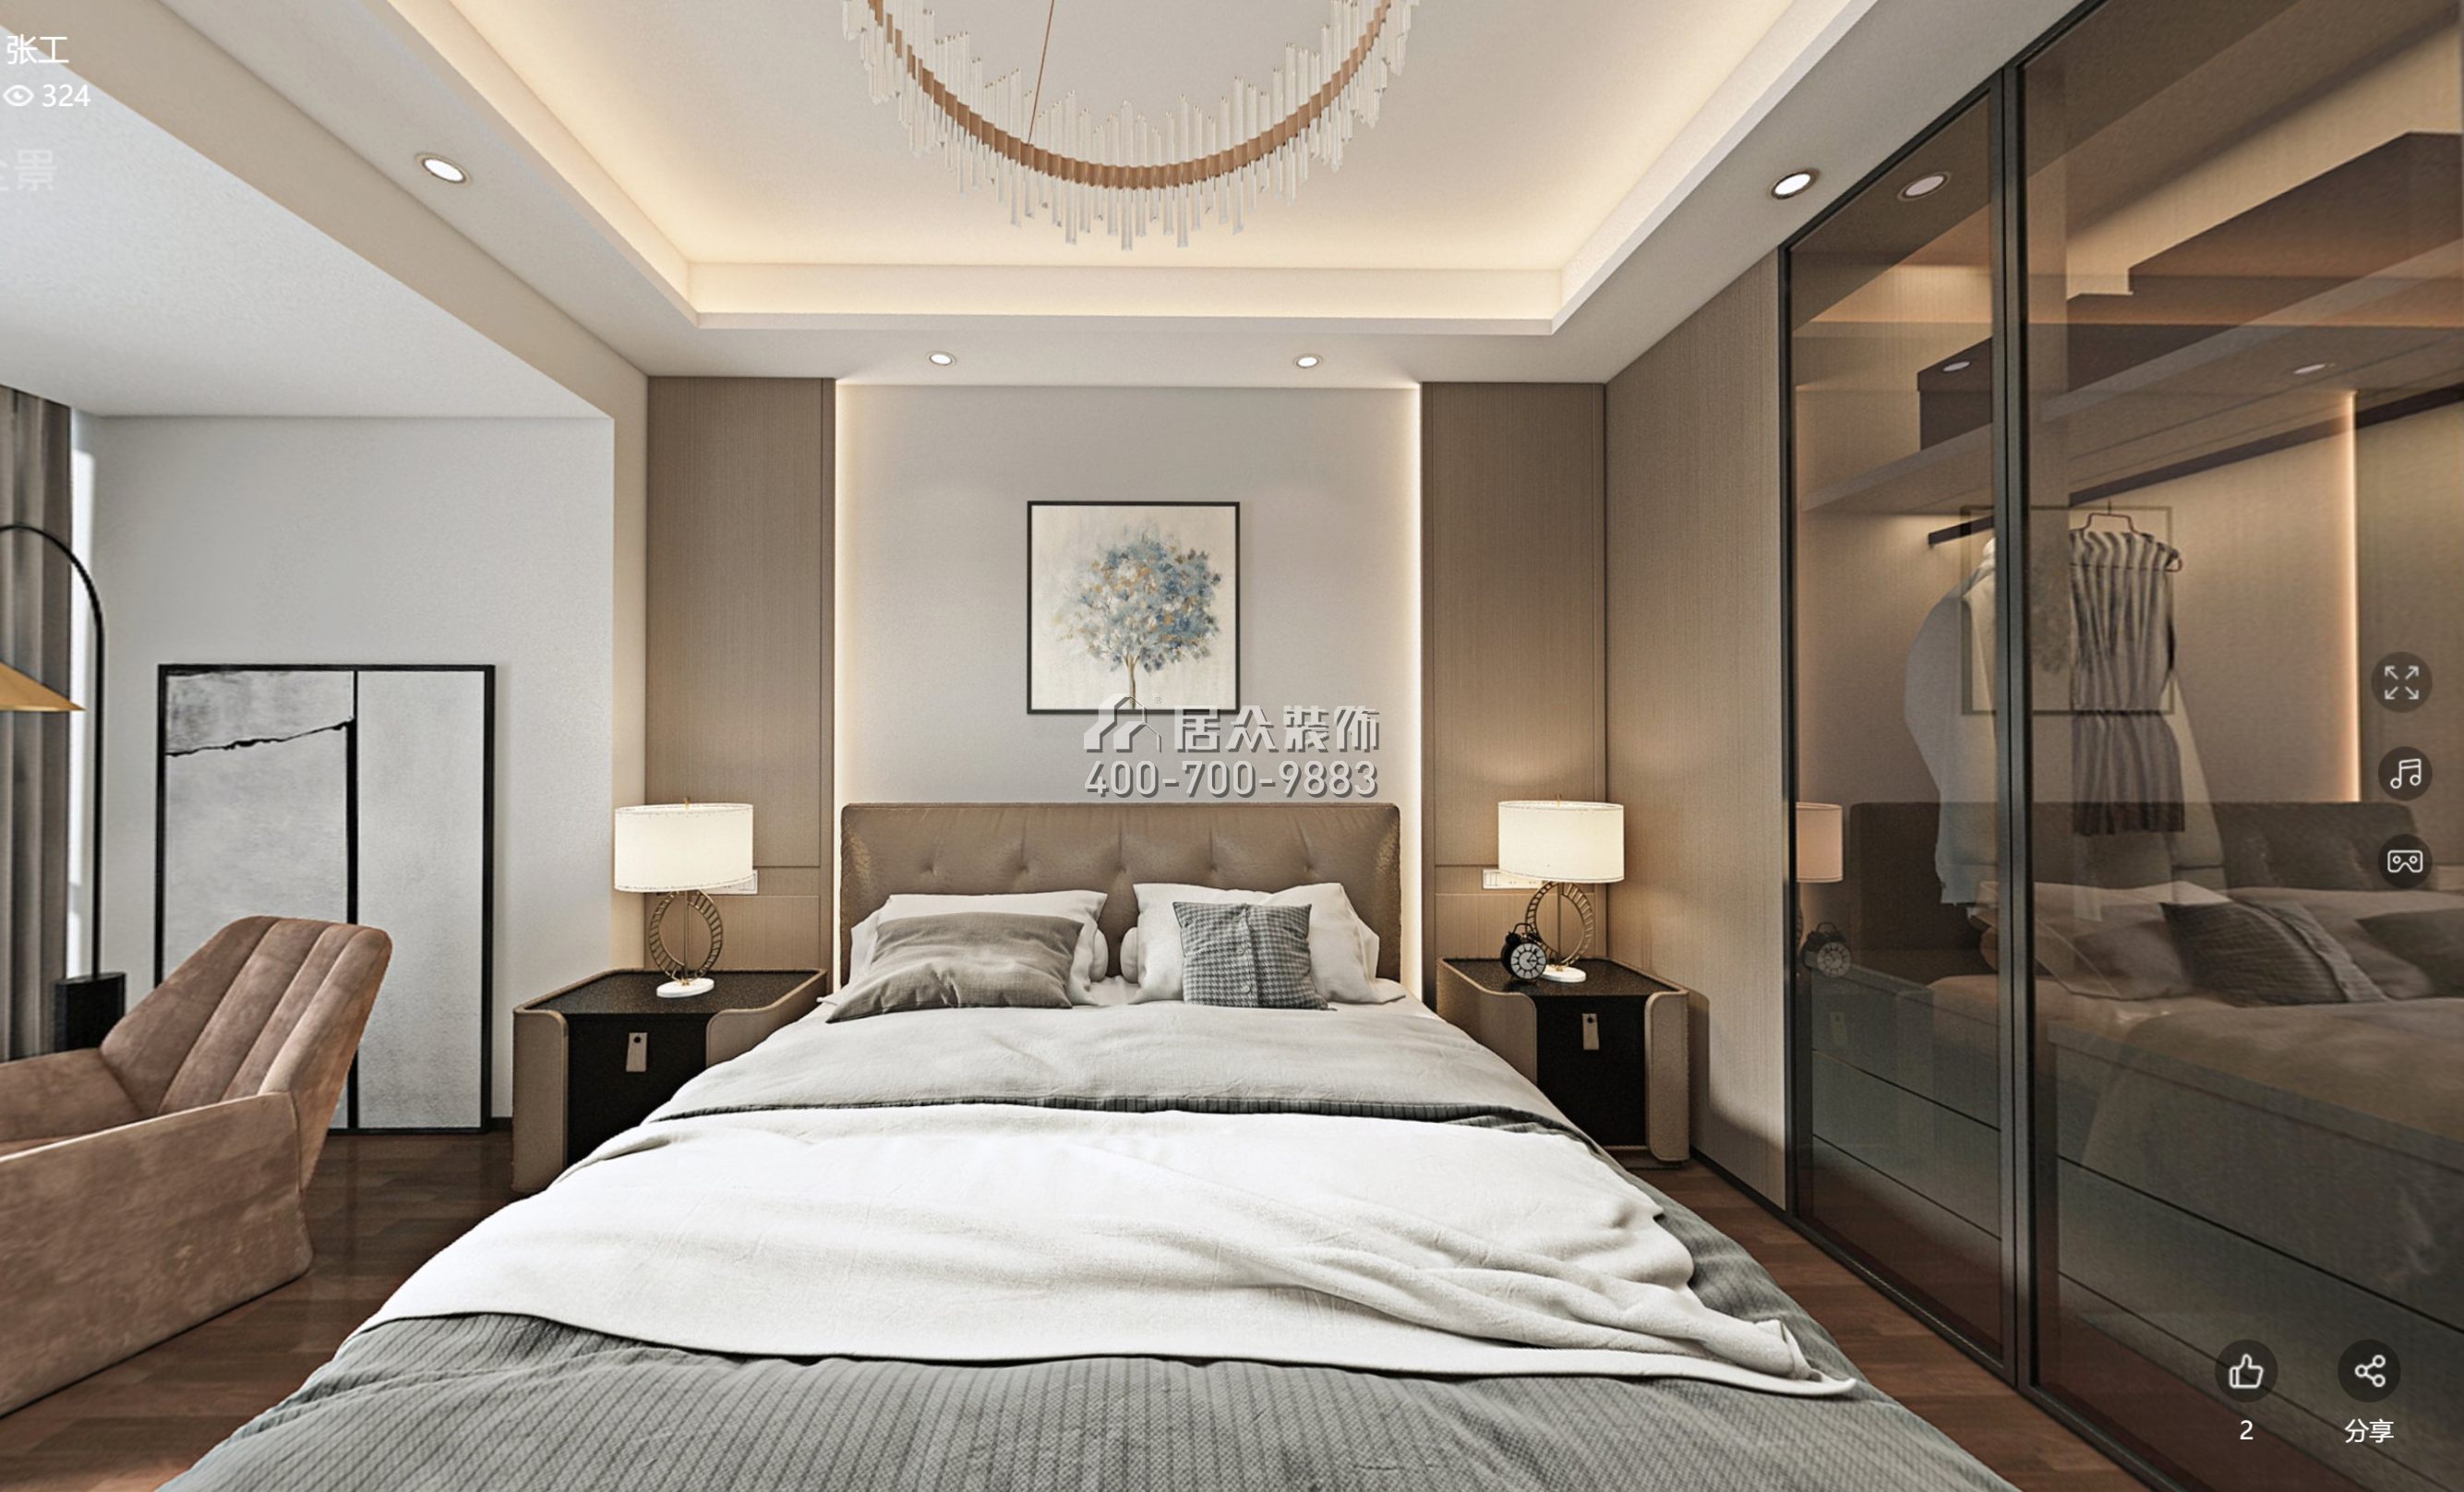 中洲中央公園160平方米現代簡約風格平層戶型臥室裝修效果圖